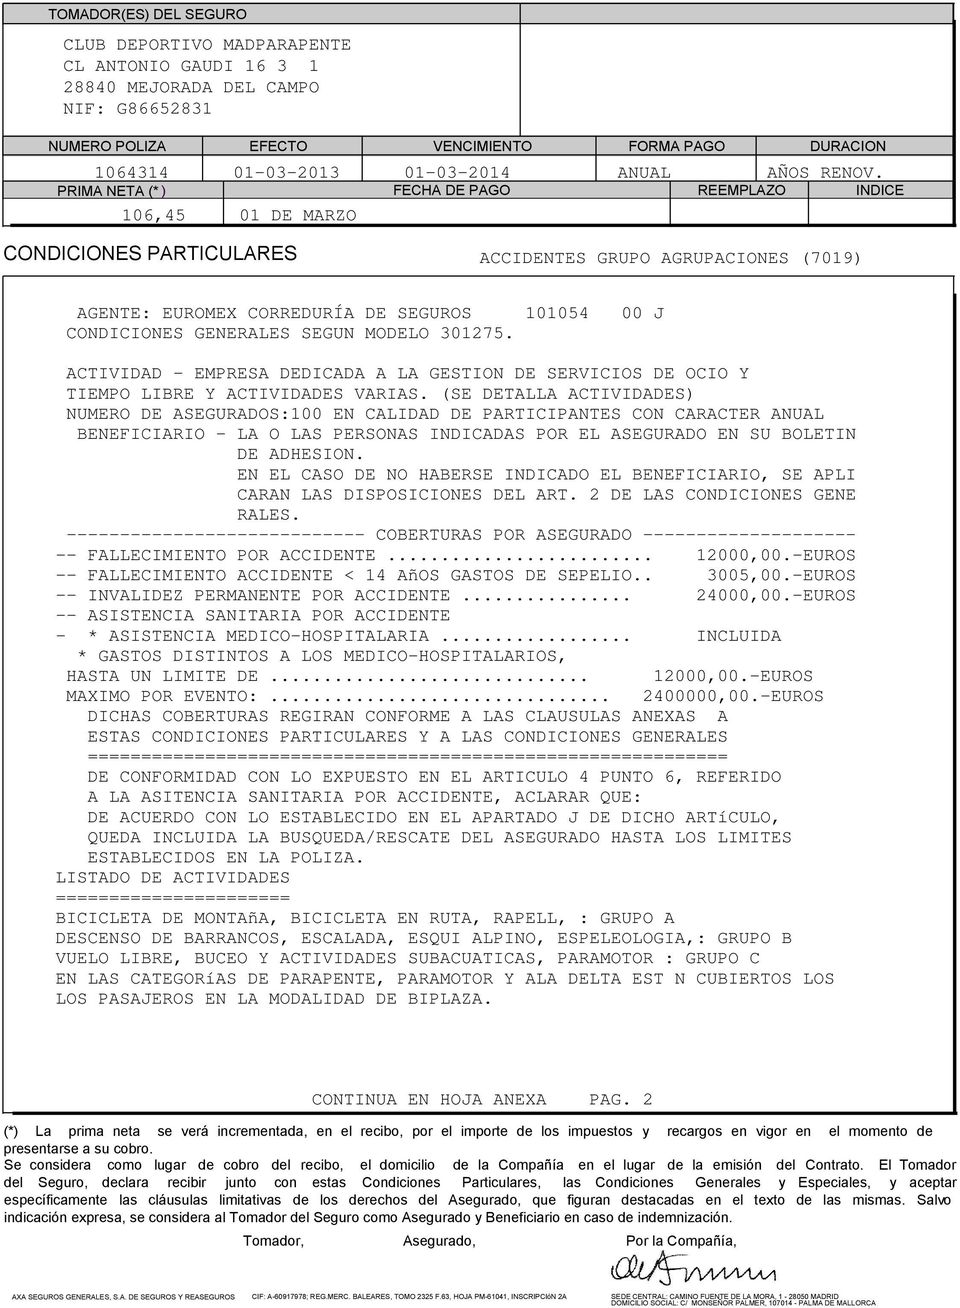 PRIMA NETA (* ) FECHA DE PAGO REEMPLAZO INDICE 106,45 01 DE MARZO CONDICIONES PARTICULARES ACCIDENTES GRUPO AGRUPACIONES (7019) AGENTE: EUROMEX CORREDURÍA DE SEGUROS 101054 00 J CONDICIONES GENERALES